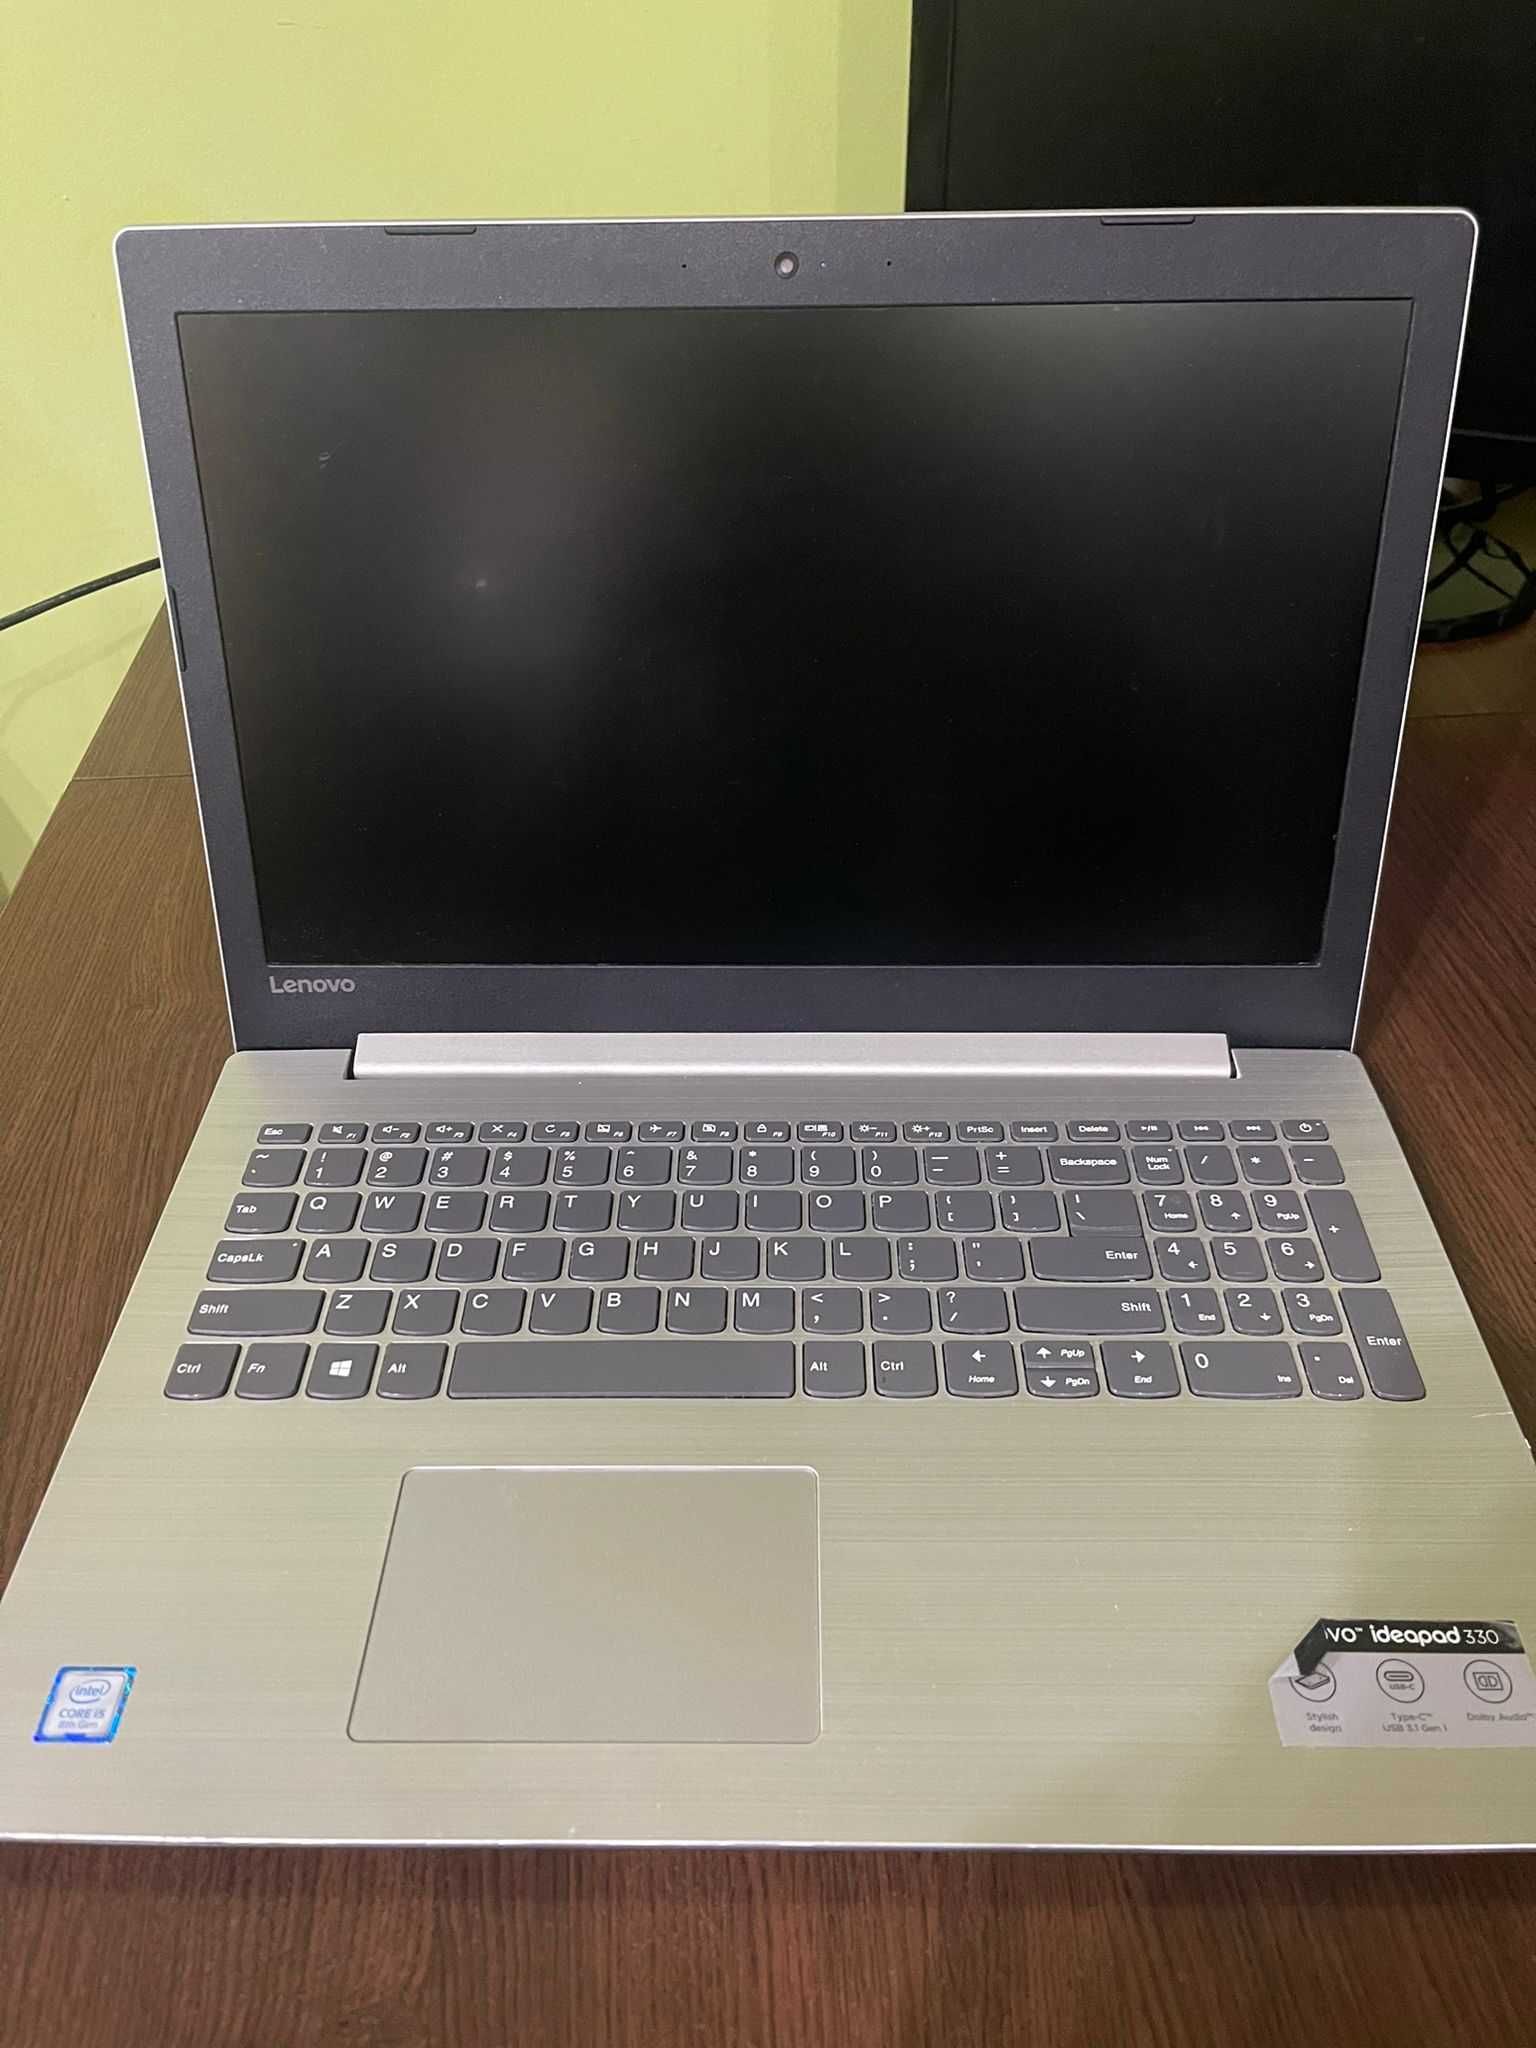 Lenovo Ideapad 330-15IKB, i5-8250U, 12GB Ram, SSD, Windows 10 Pro